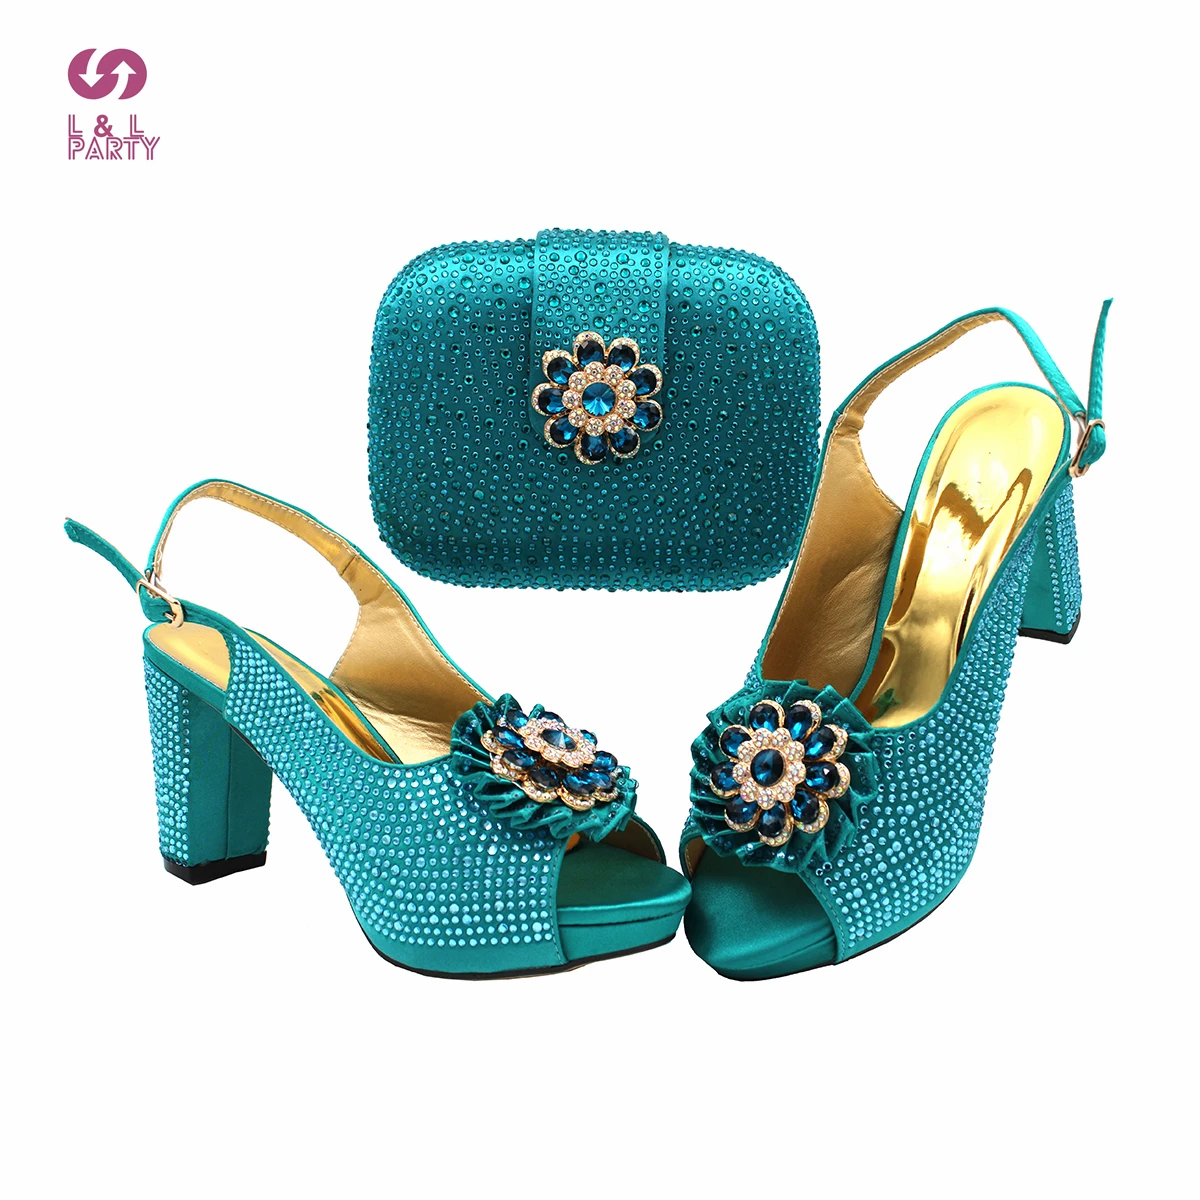 Italienischen Frauen Party Schuhe und Tasche Set in Teal Farbe Hohe Qualität Komfortable Heels mit Shinning Kristall für Weihnachten